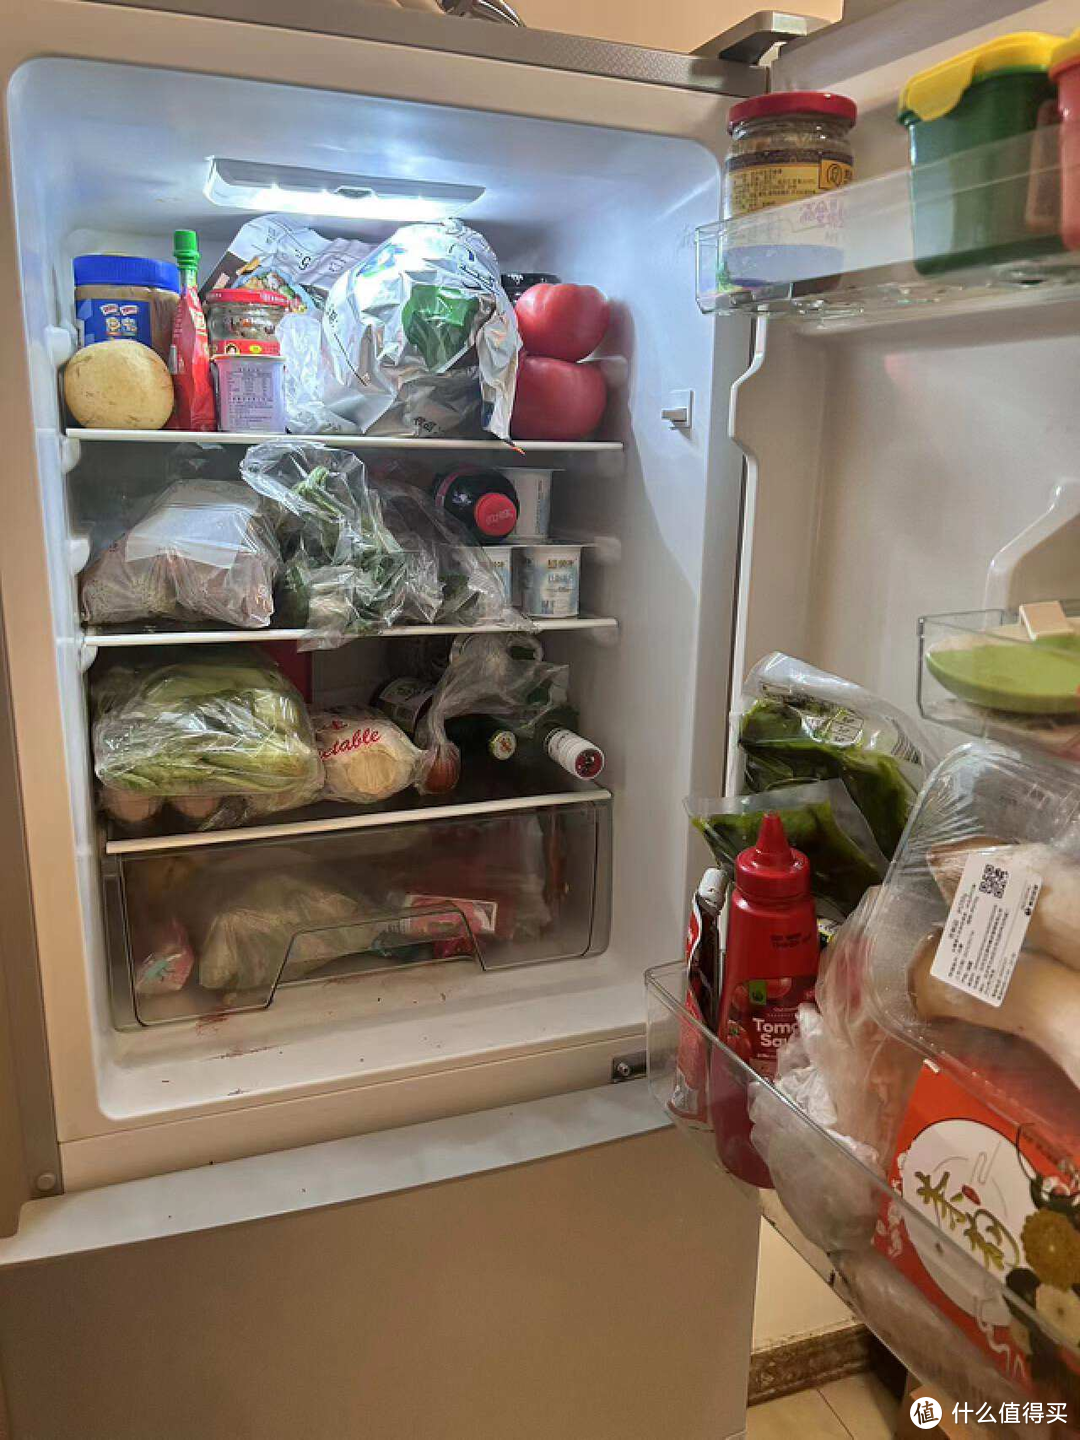 冰箱到底放厨房还是客厅？能否有一款容积大体积小的冰箱来节省室内空间呢？